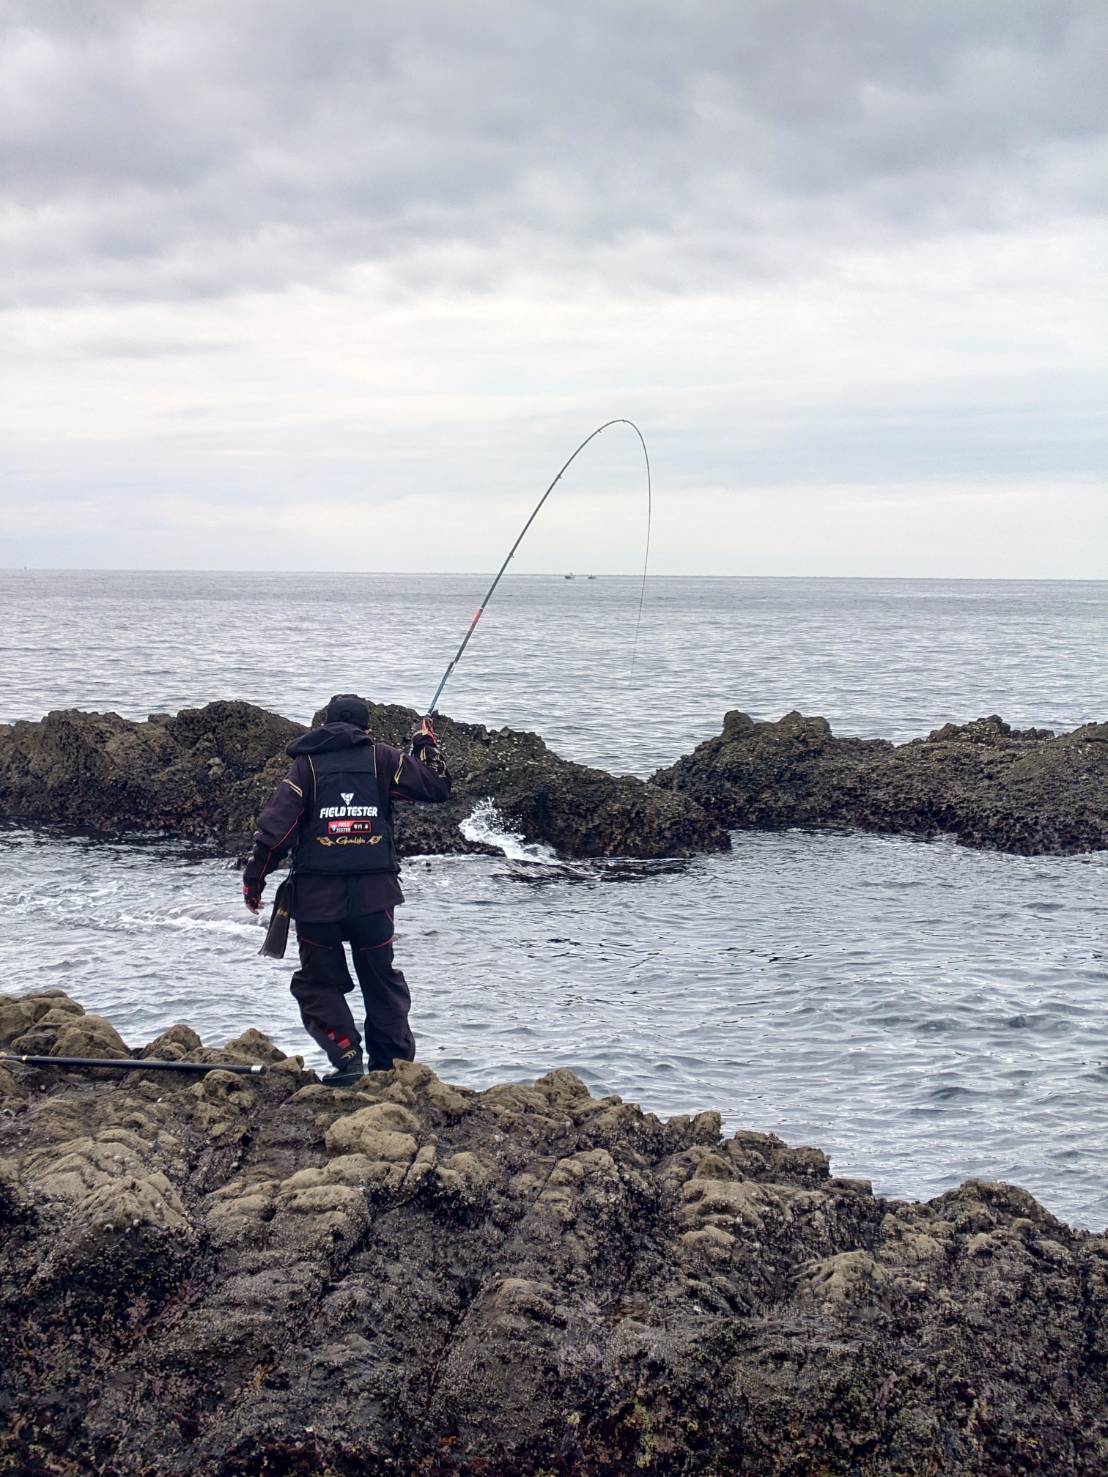 鮭釣りで使用した竿&リール - 北海道のスポーツ